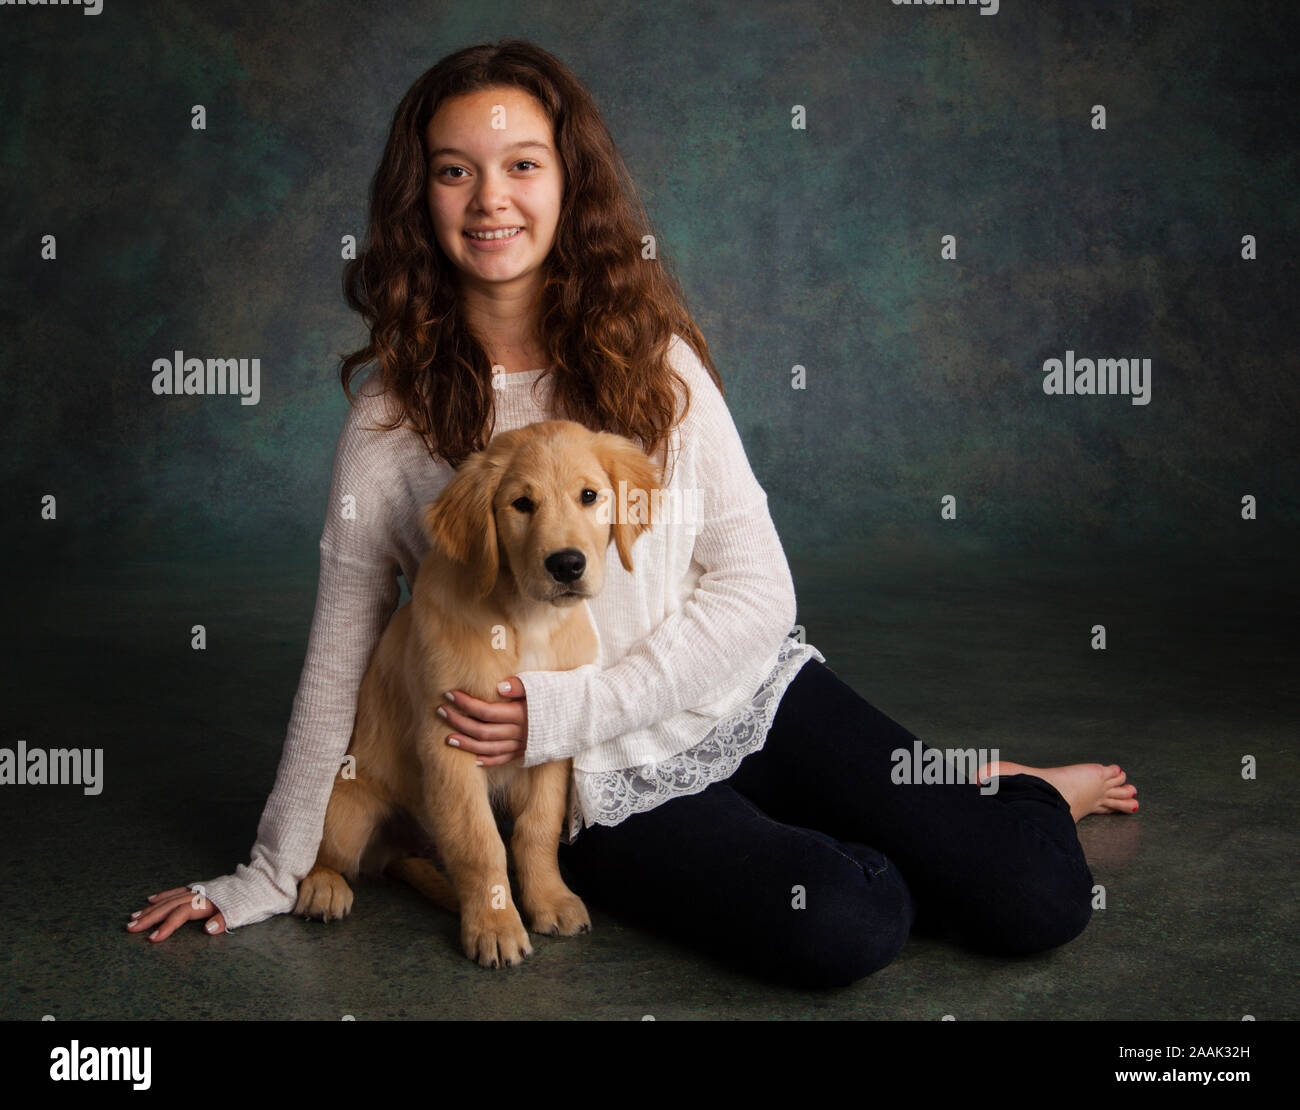 Ritratto in studio della ragazza adolescente con il Golden Retriever cucciolo Foto Stock